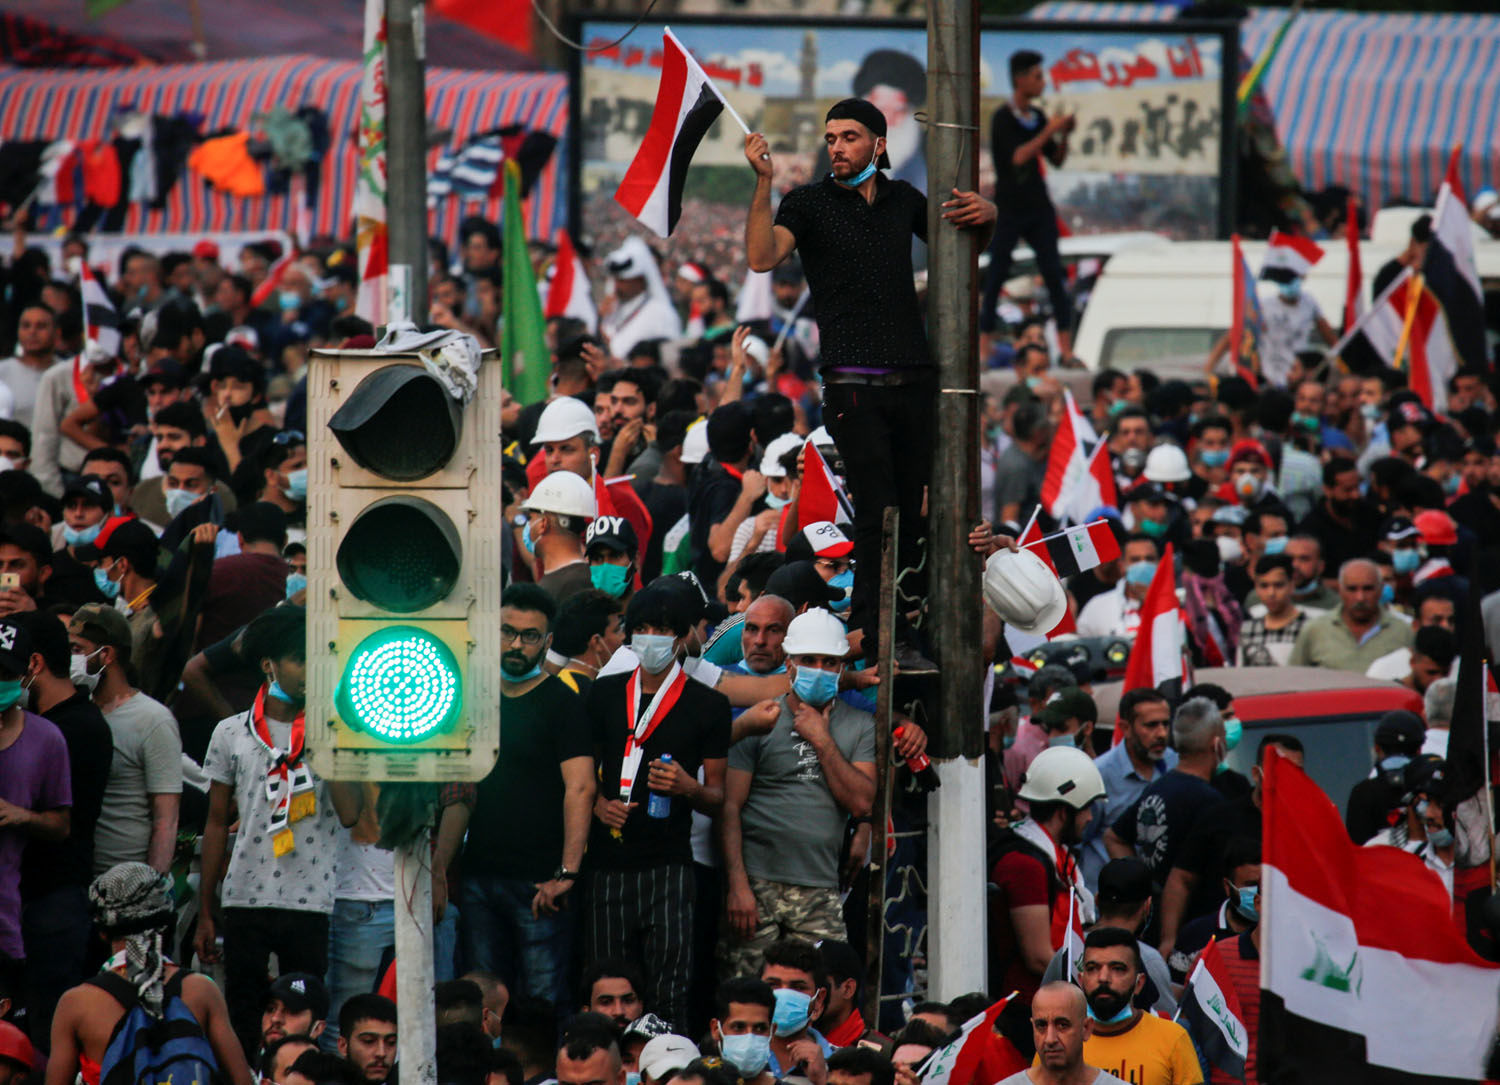 تظاهرات گسترده علیه دولت جدید در سه شهر بزرگ عراق